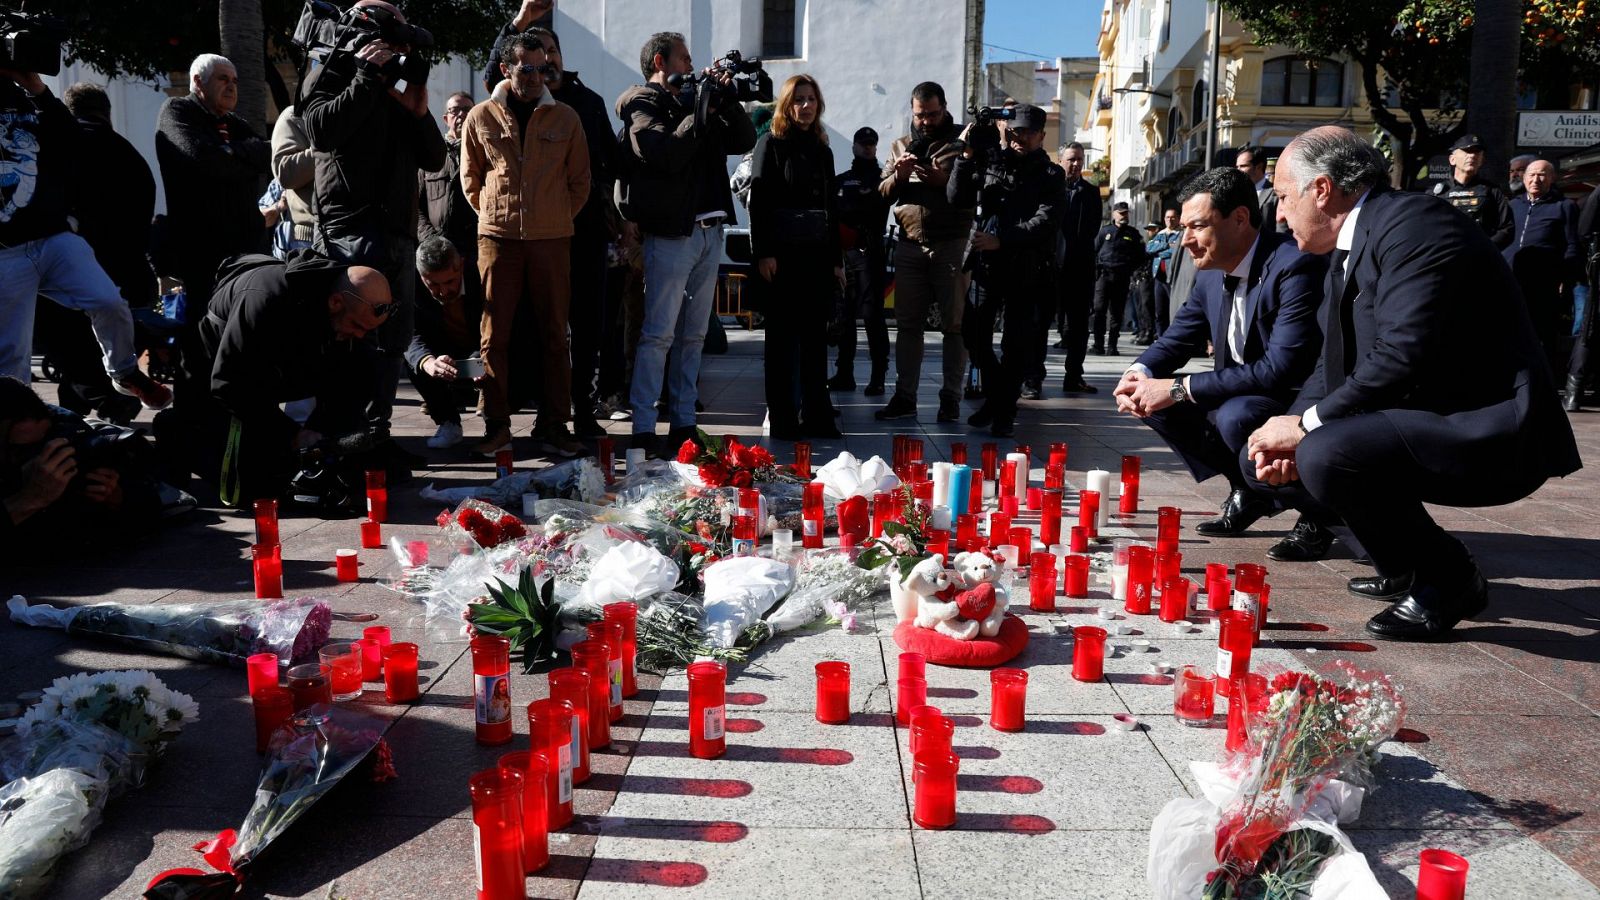 Pasa a disposición judicial el presunto asesino de Algeciras